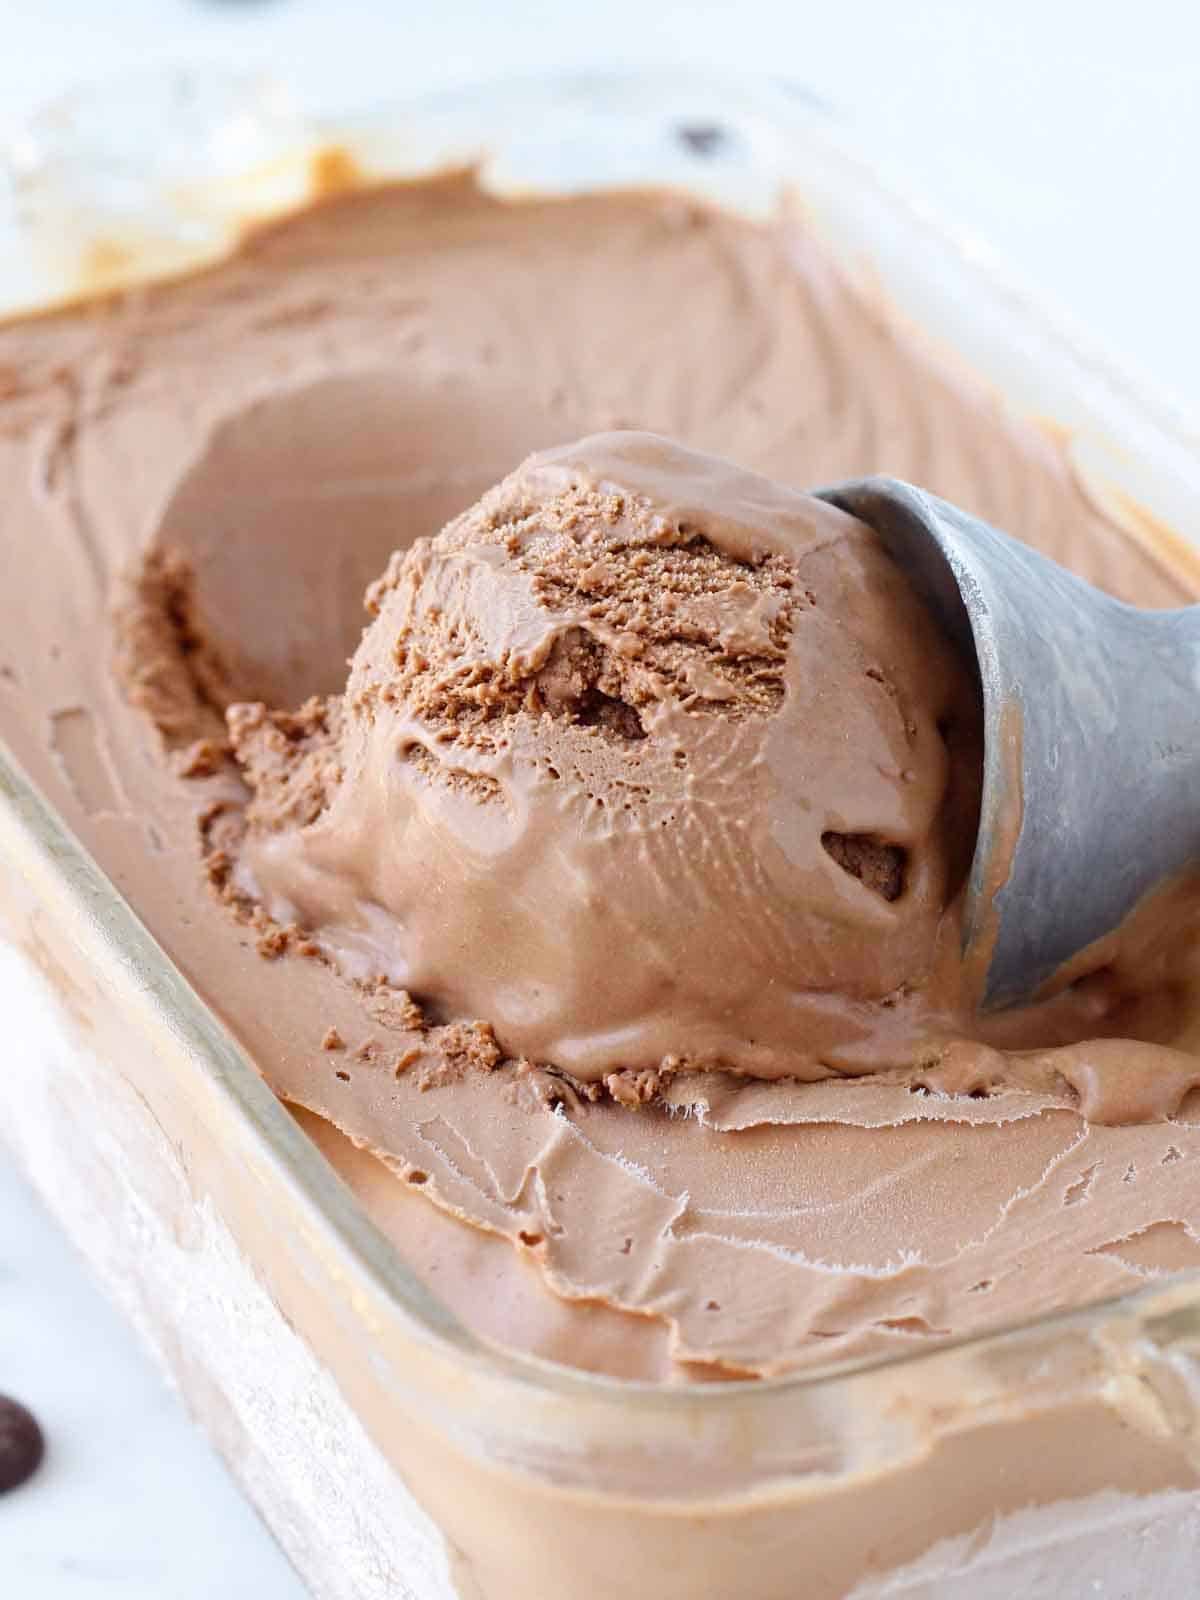 one scoop of chocolate ice cream.